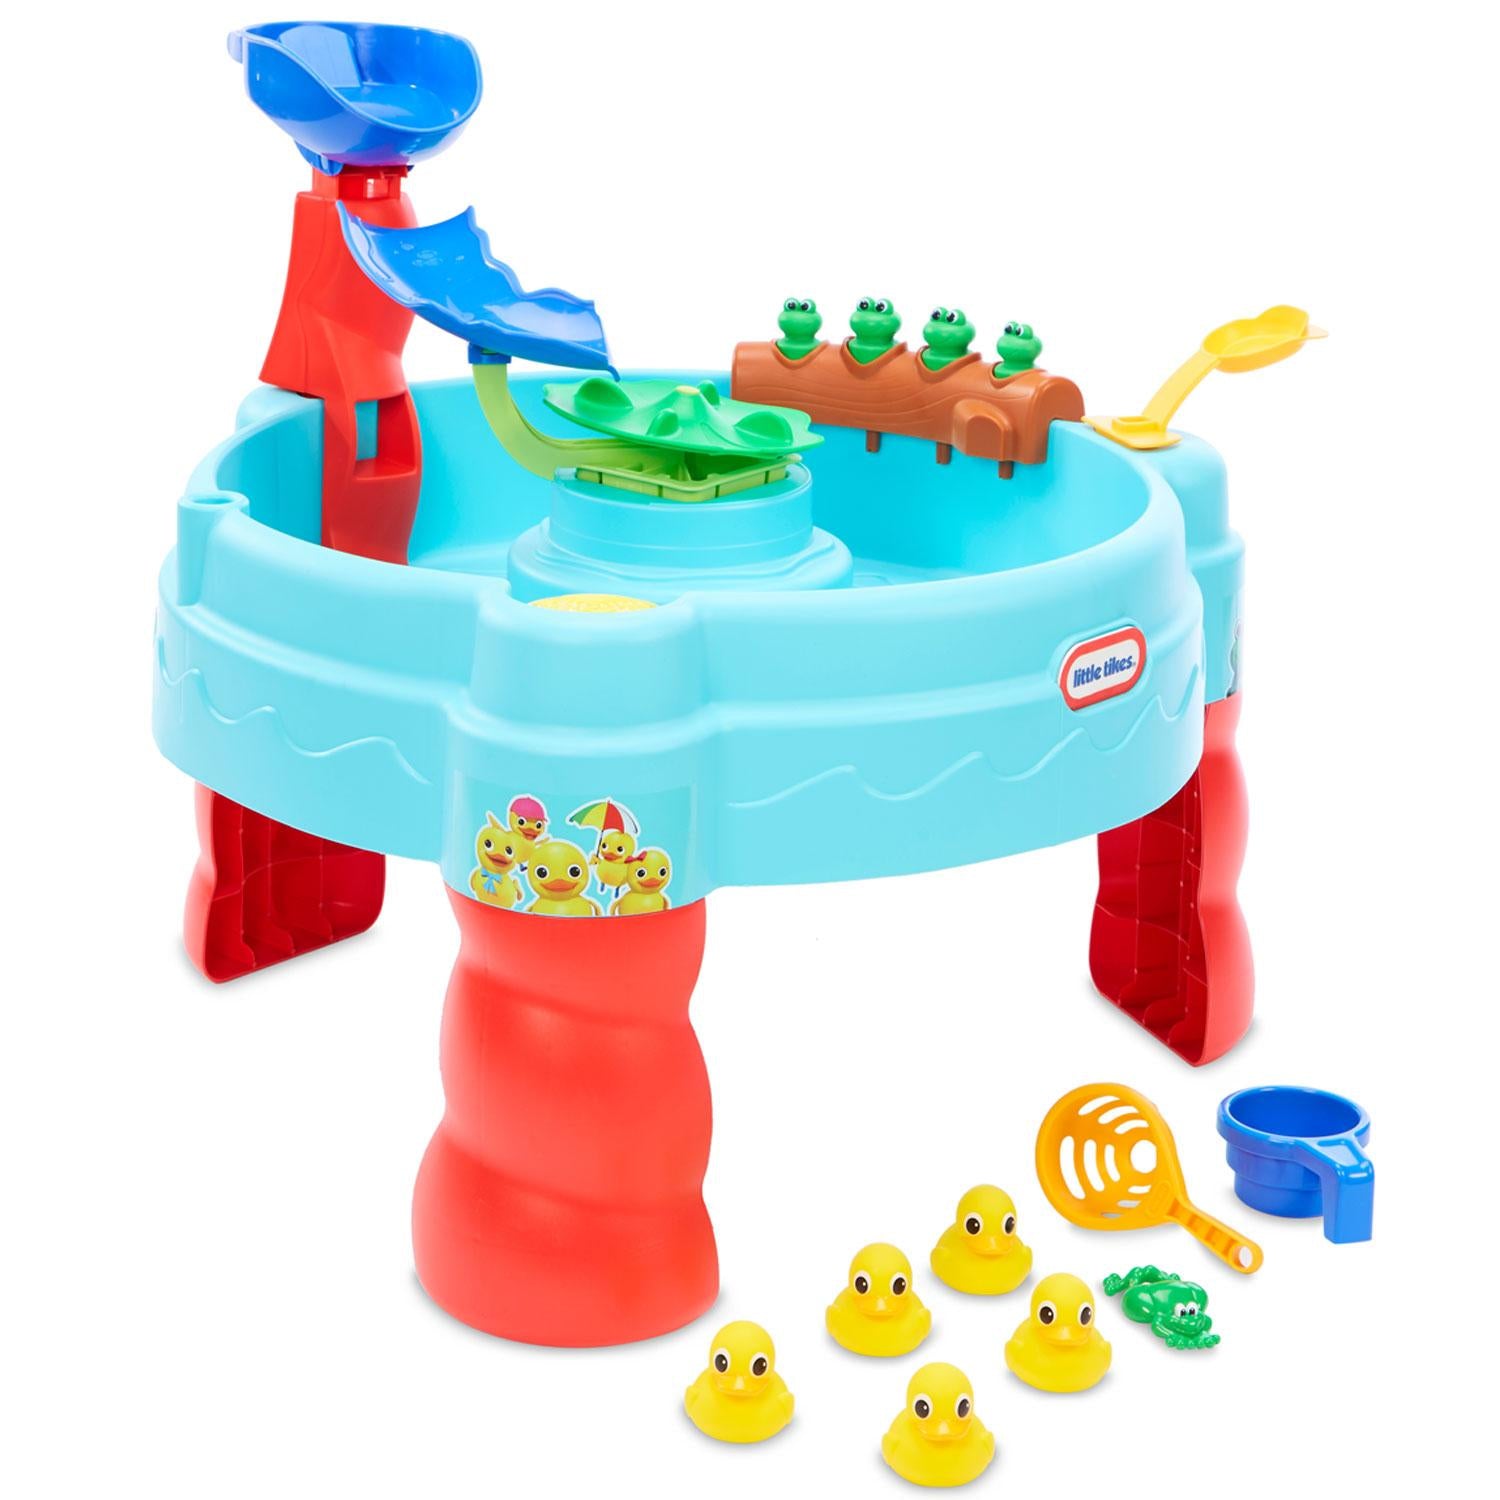 Little Tikes -  Baby Bum 5 Little Ducks Water Table - BambiniJO | Buy Online | Jordan